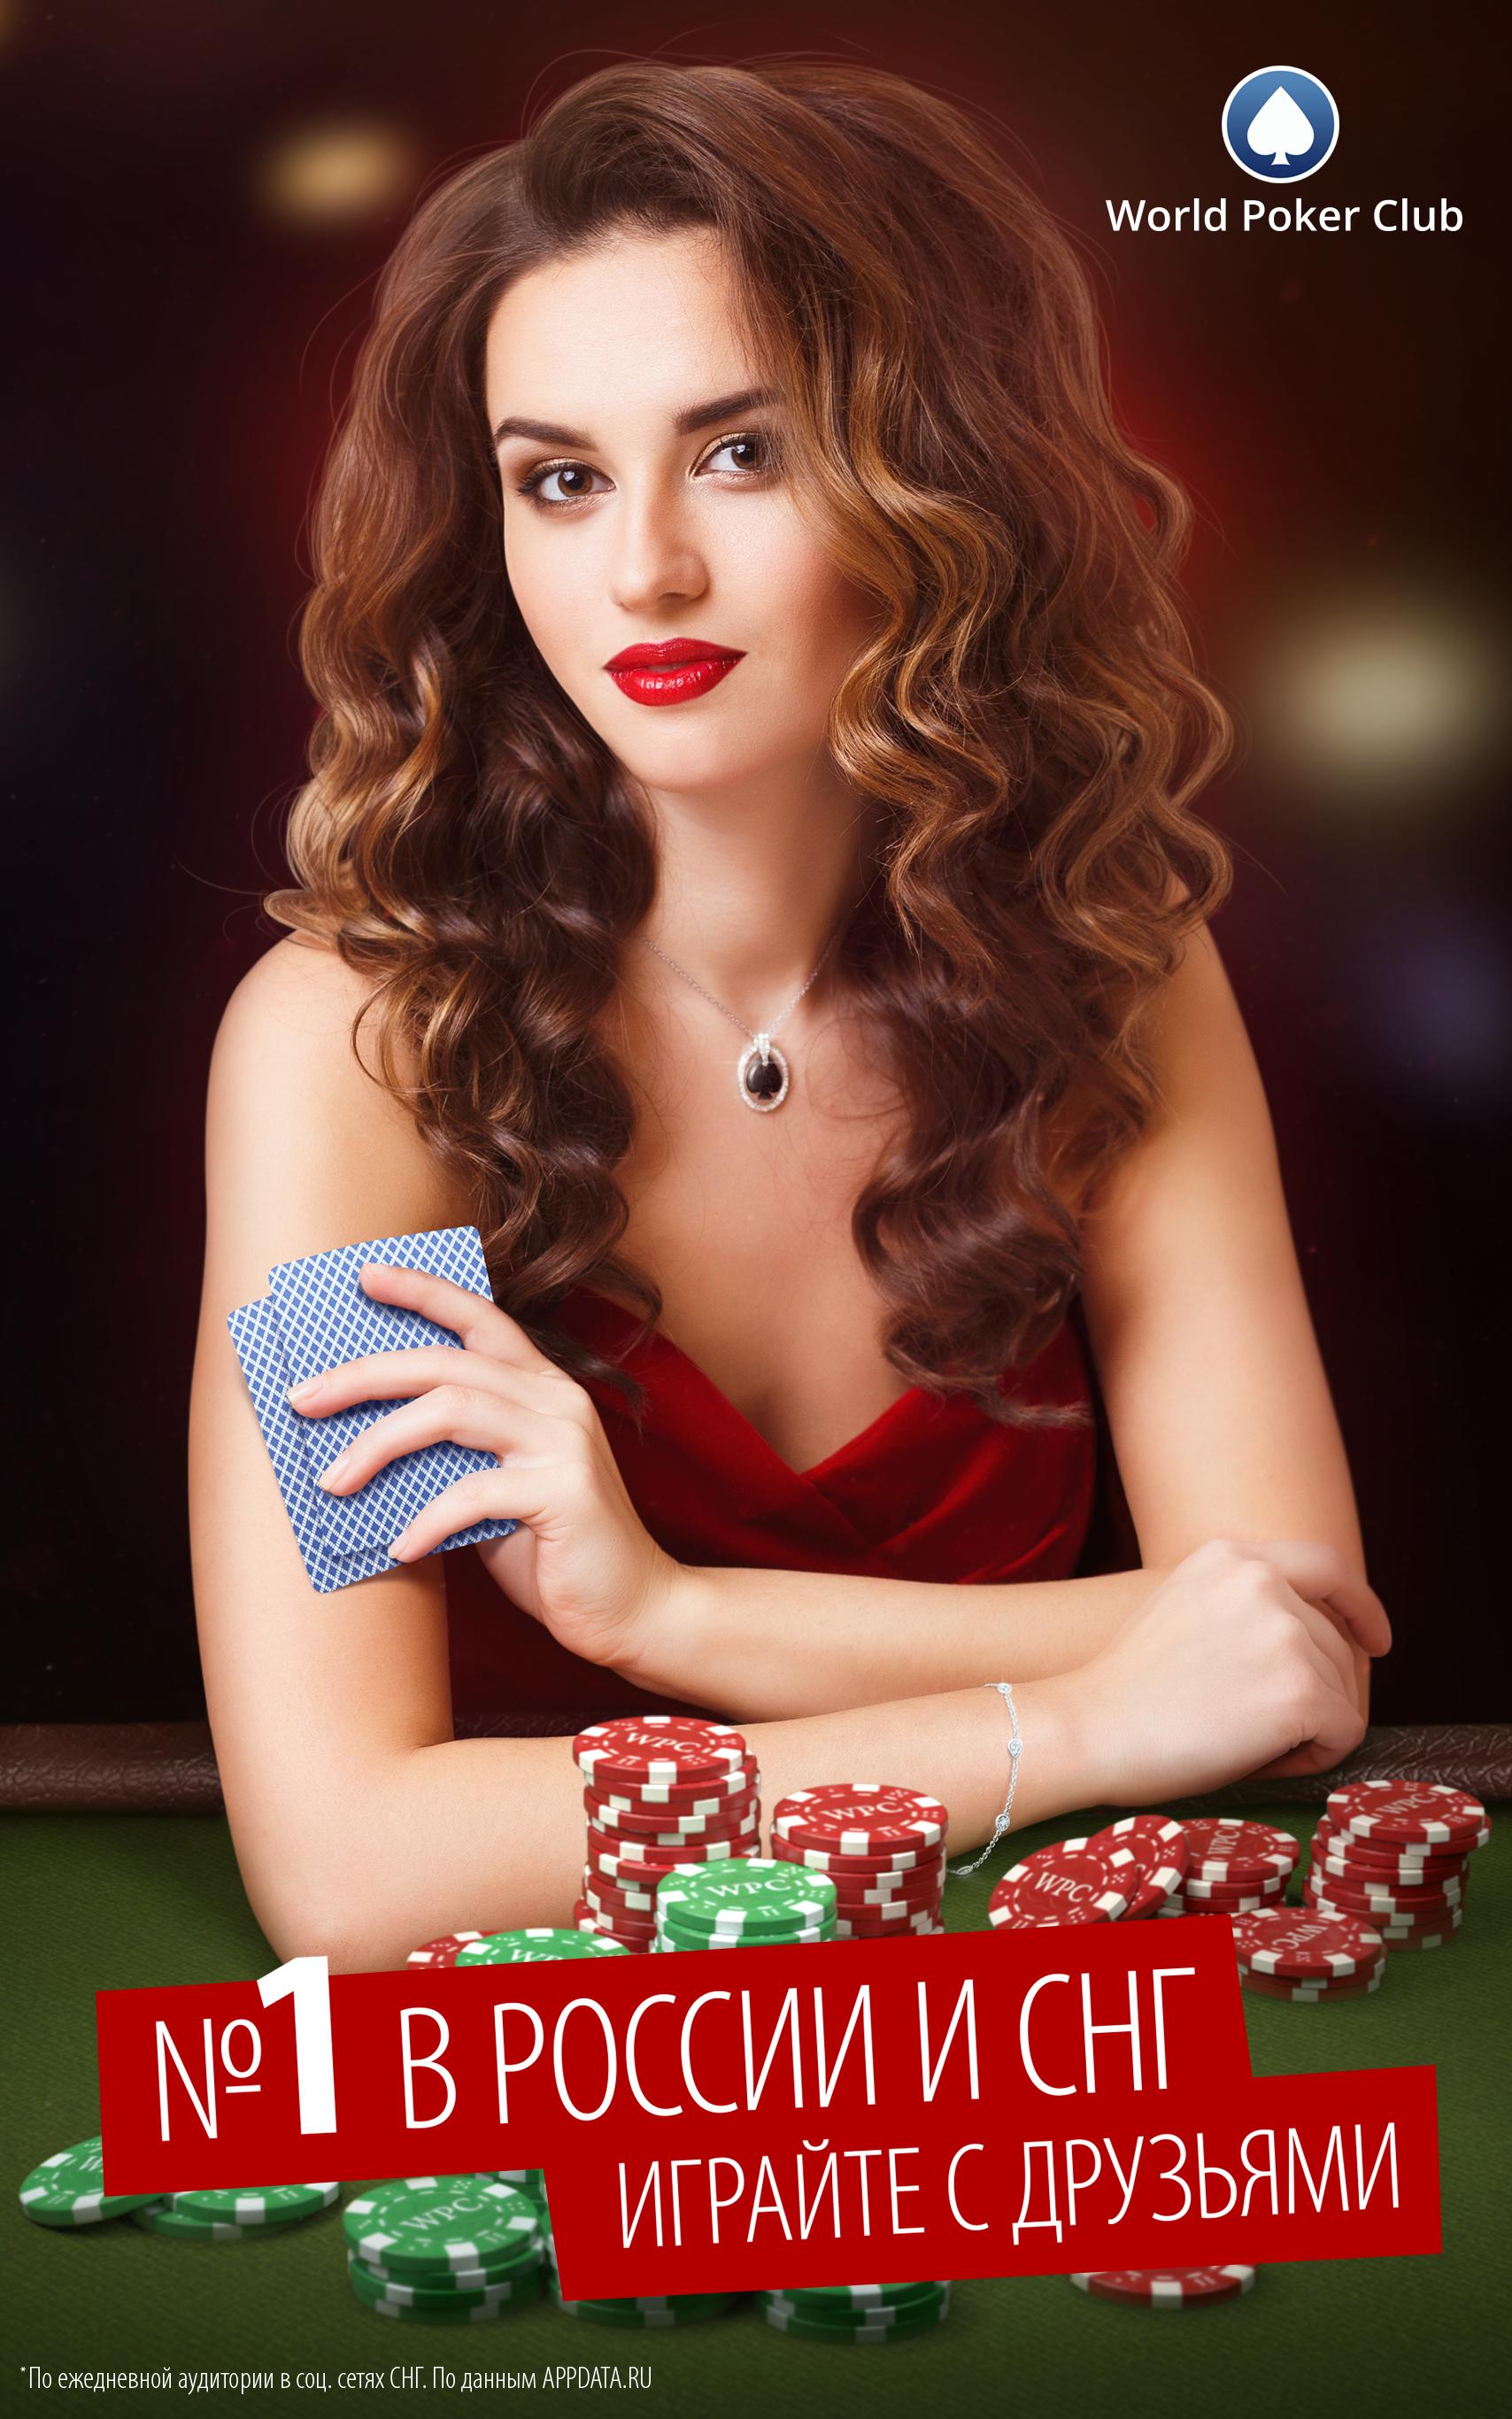 Покер онлайн скачать бесплатно world poker club загрузить программу фонбет